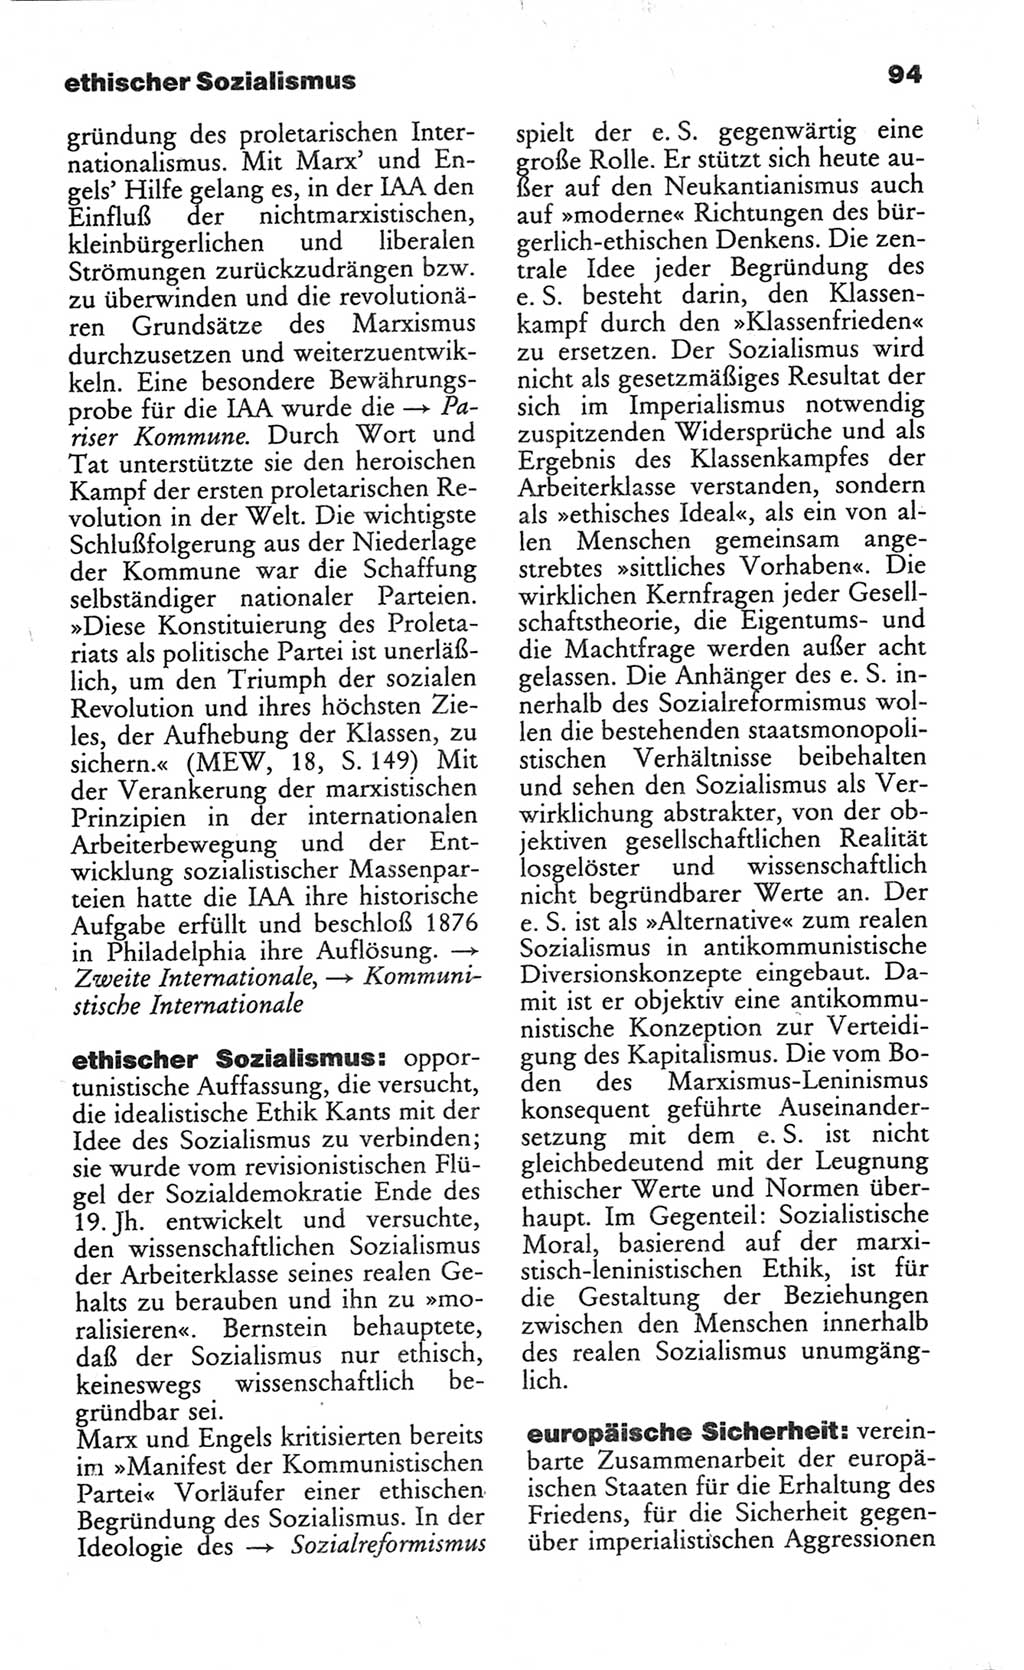 Wörterbuch des wissenschaftlichen Kommunismus [Deutsche Demokratische Republik (DDR)] 1982, Seite 94 (Wb. wiss. Komm. DDR 1982, S. 94)